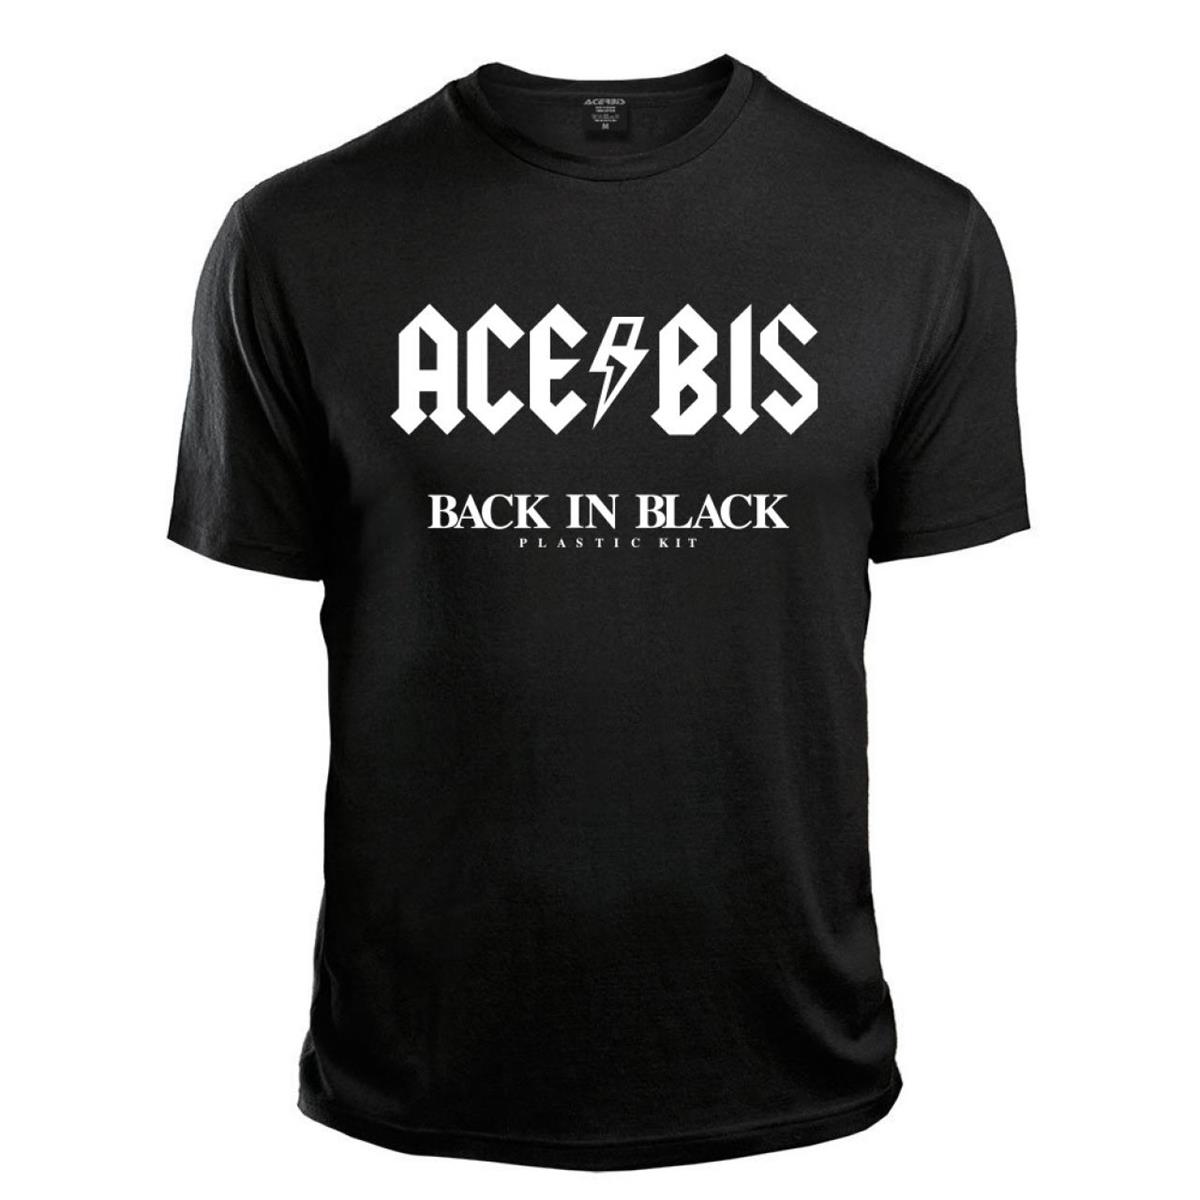 Acerbis T-Shirt Back in Black Black